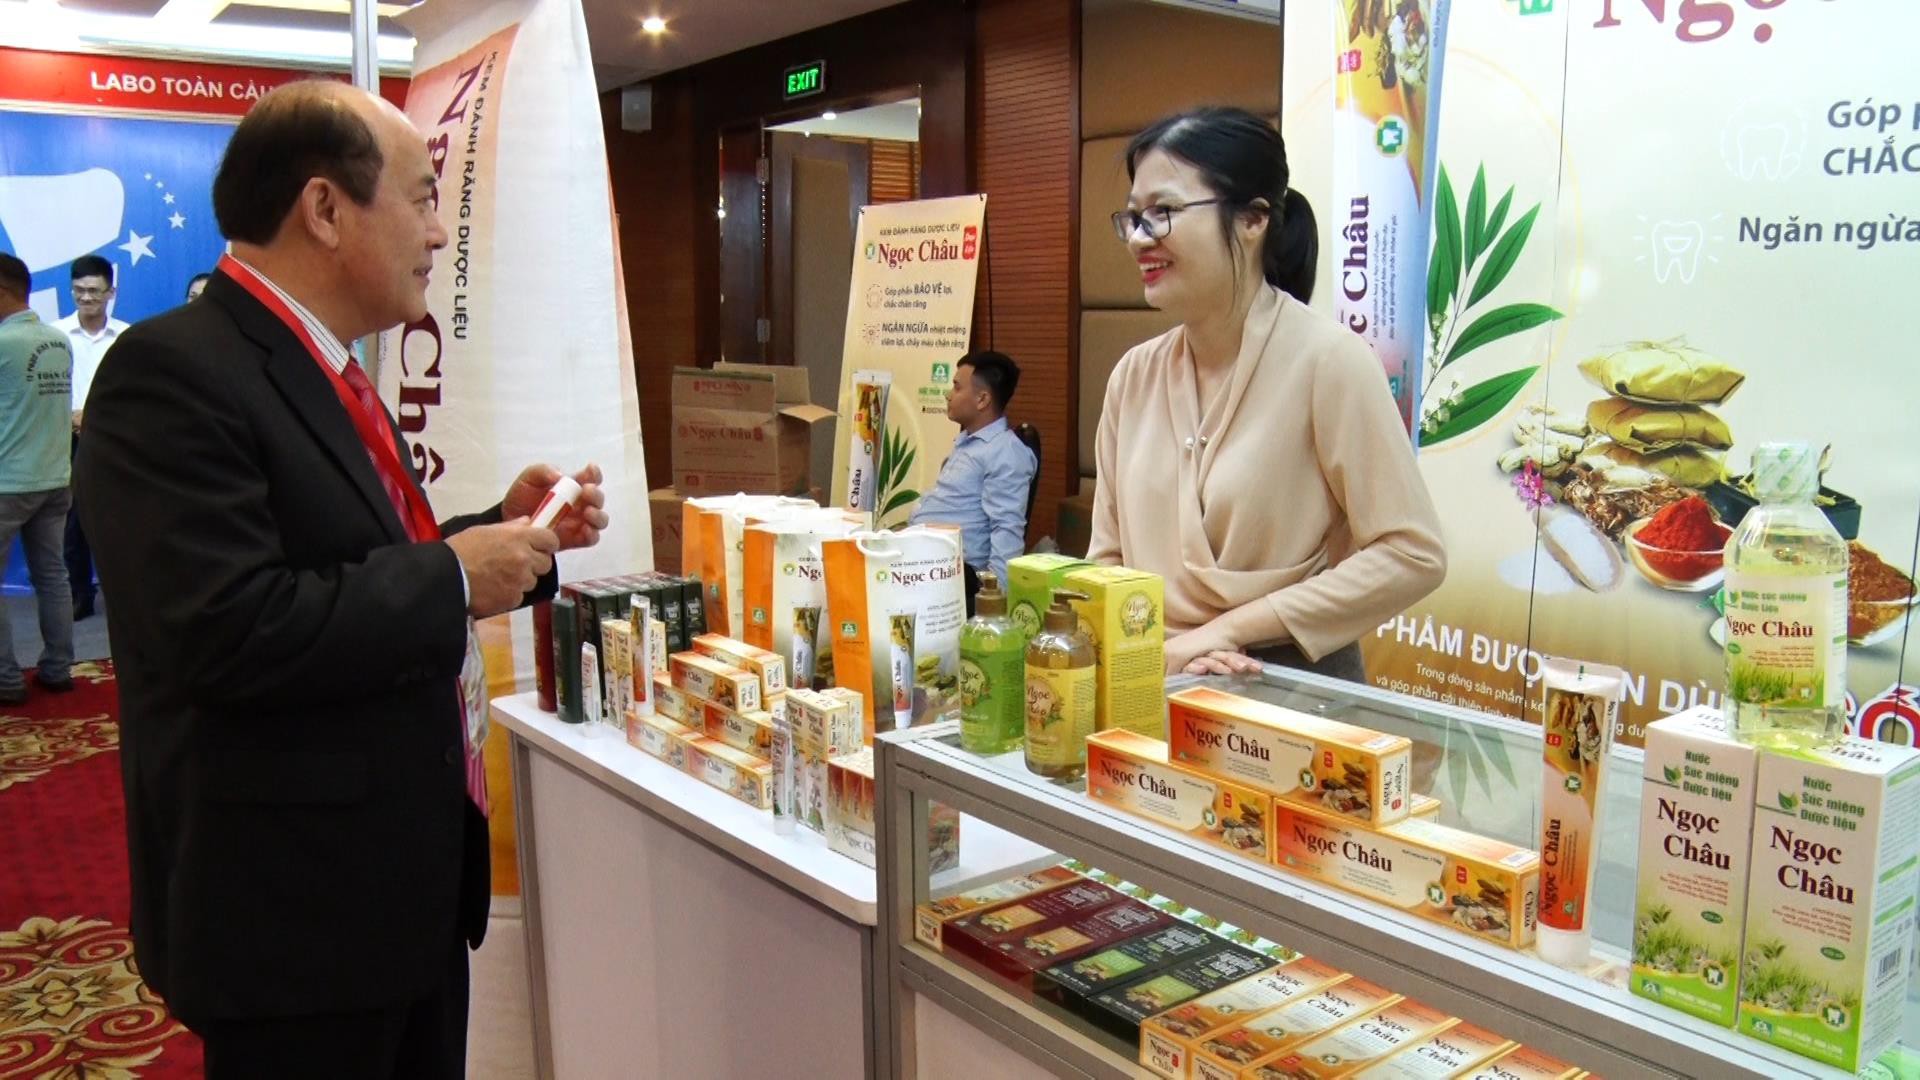 Kem đánh răng dược liệu Ngọc Châu liên tục cập nhật kiến thức chuyên môn, cải tiến chất lượng phù hợp người tiêu dùng Việt - Ảnh 2.